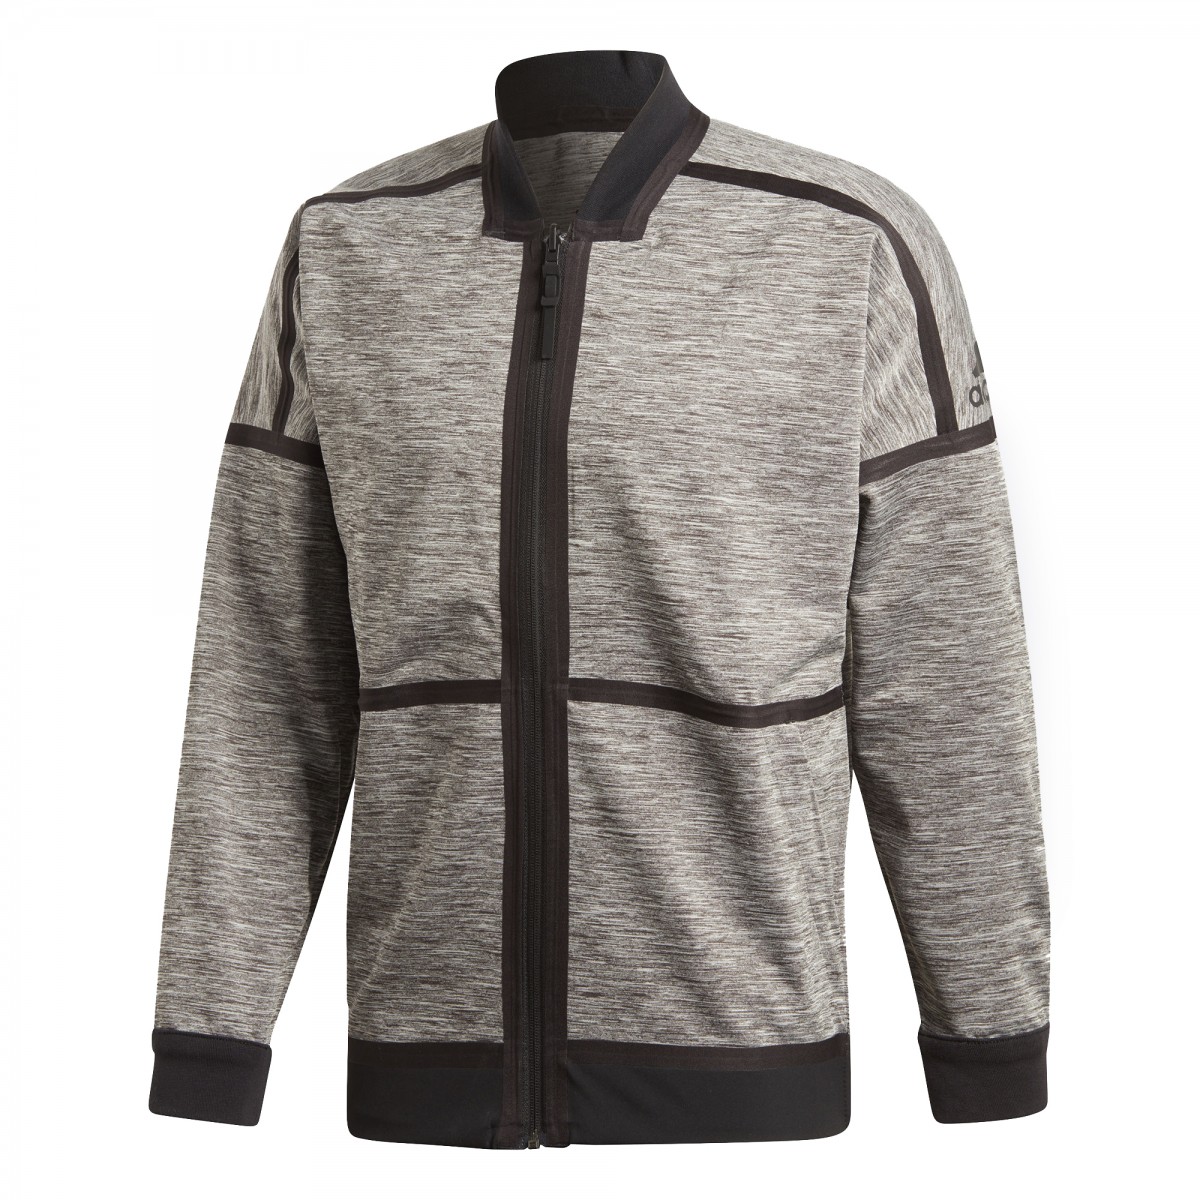 Adidas ZNE Jacket Grey Black - Ubrania męskie do squasha - sklep squash